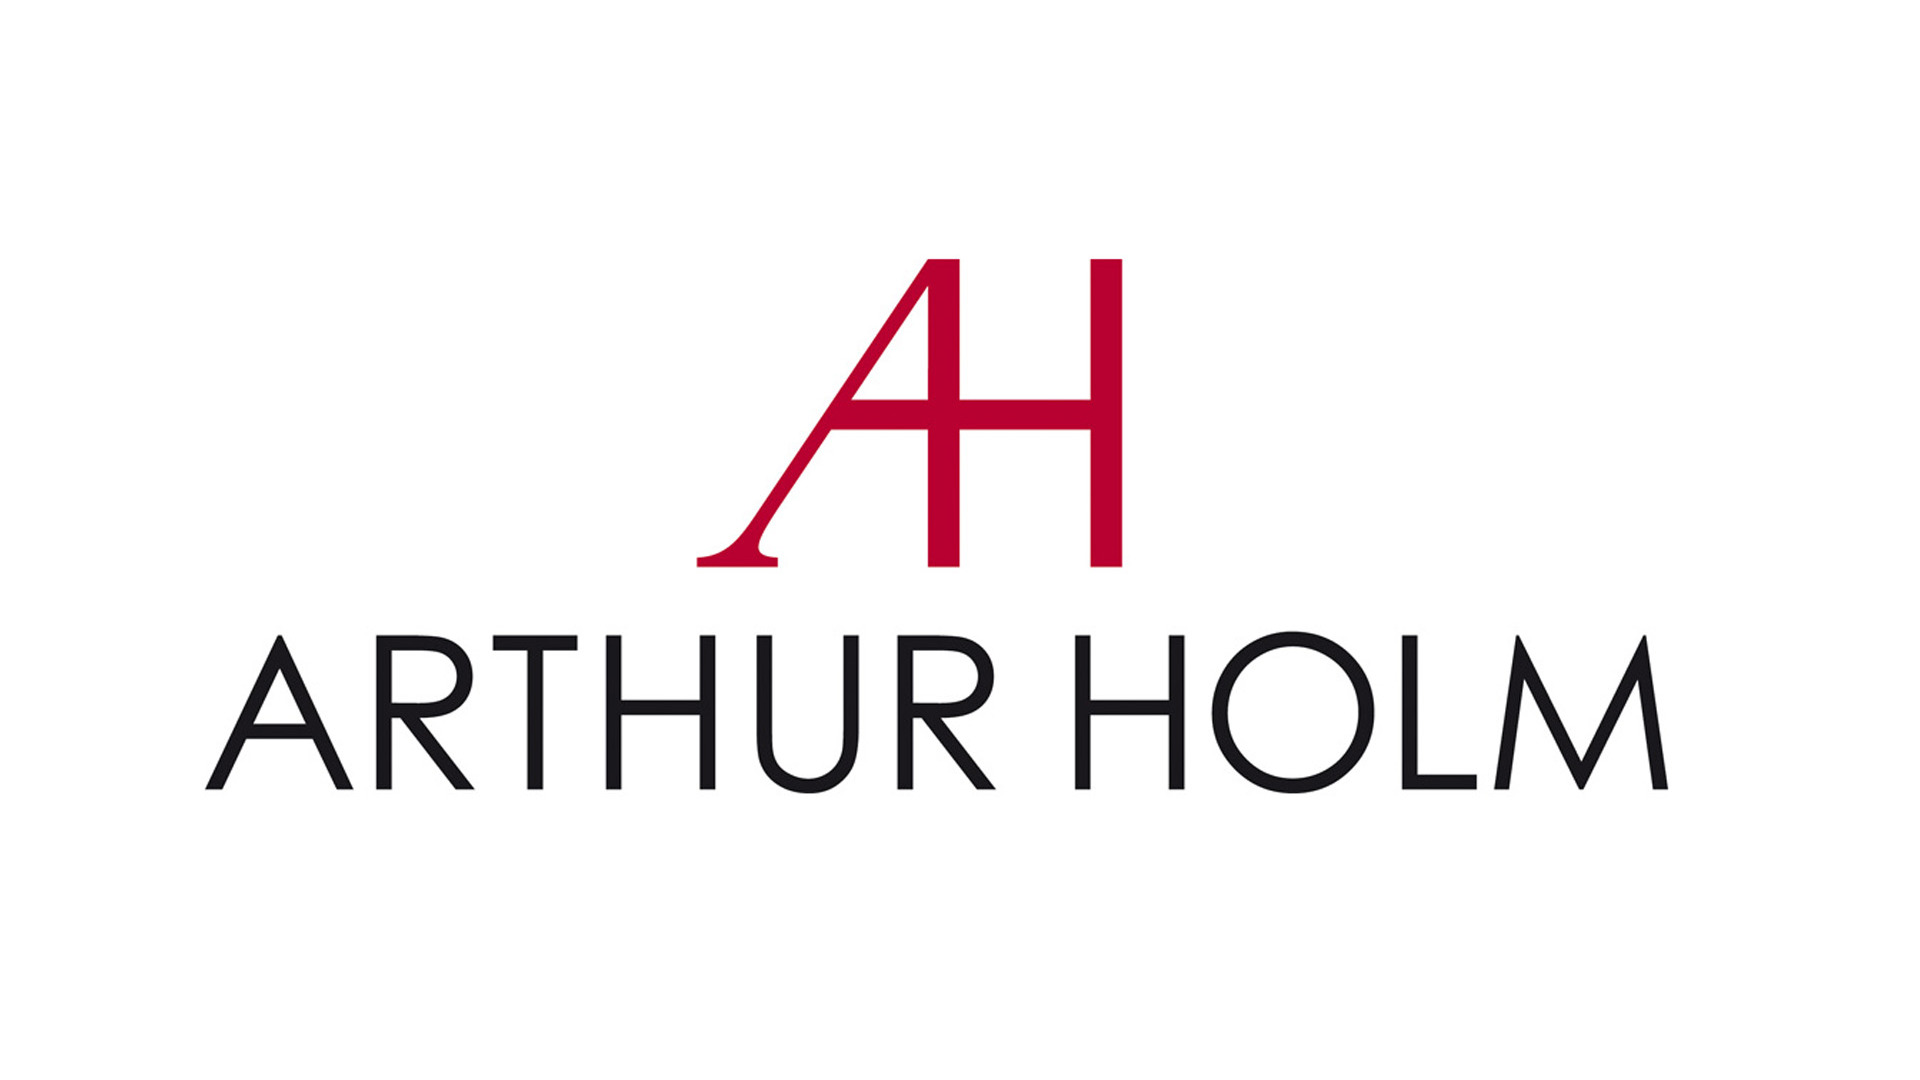 Изображения ARTHUR HOLM HDSDIC